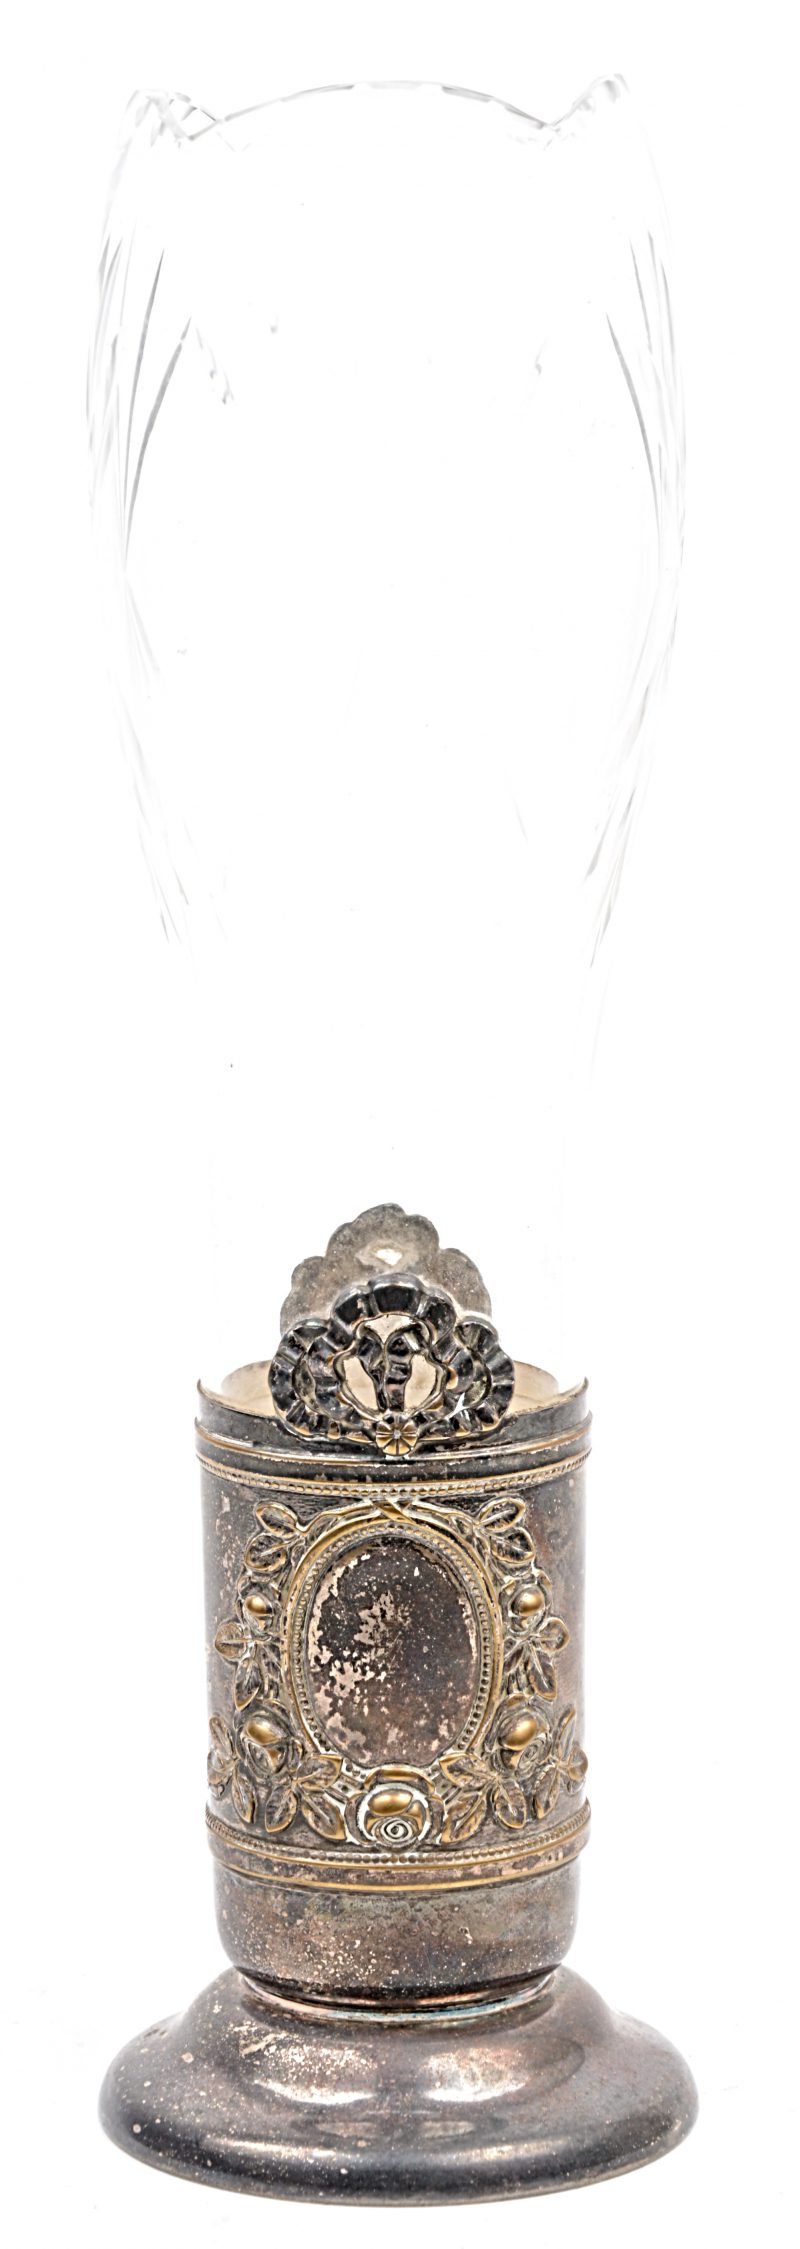 Een vaas van geslepen kleurloos kristal, in een verzilverd metalen houder met een gedreven Napoléon III-motief.